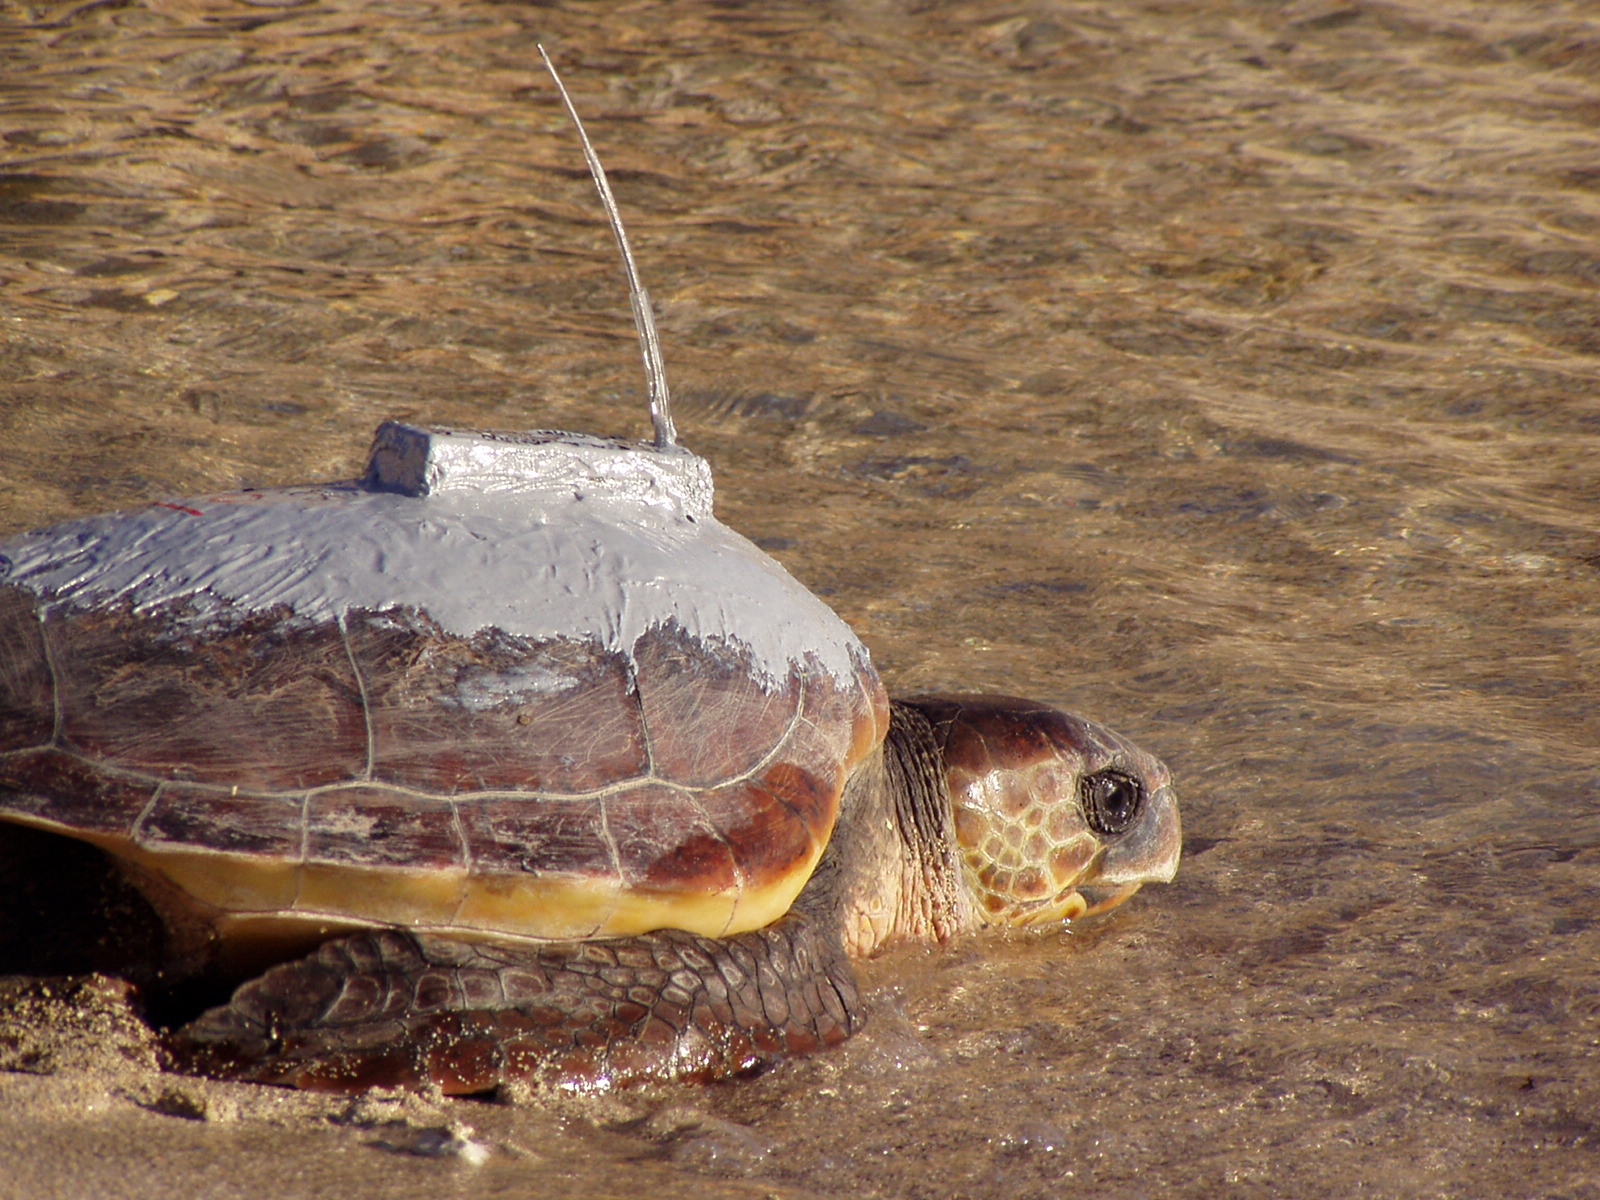 SOS tartarughe nel Mediterraneo: al via progetto europeo per proteggerle coordinato dall’Università di Pisa